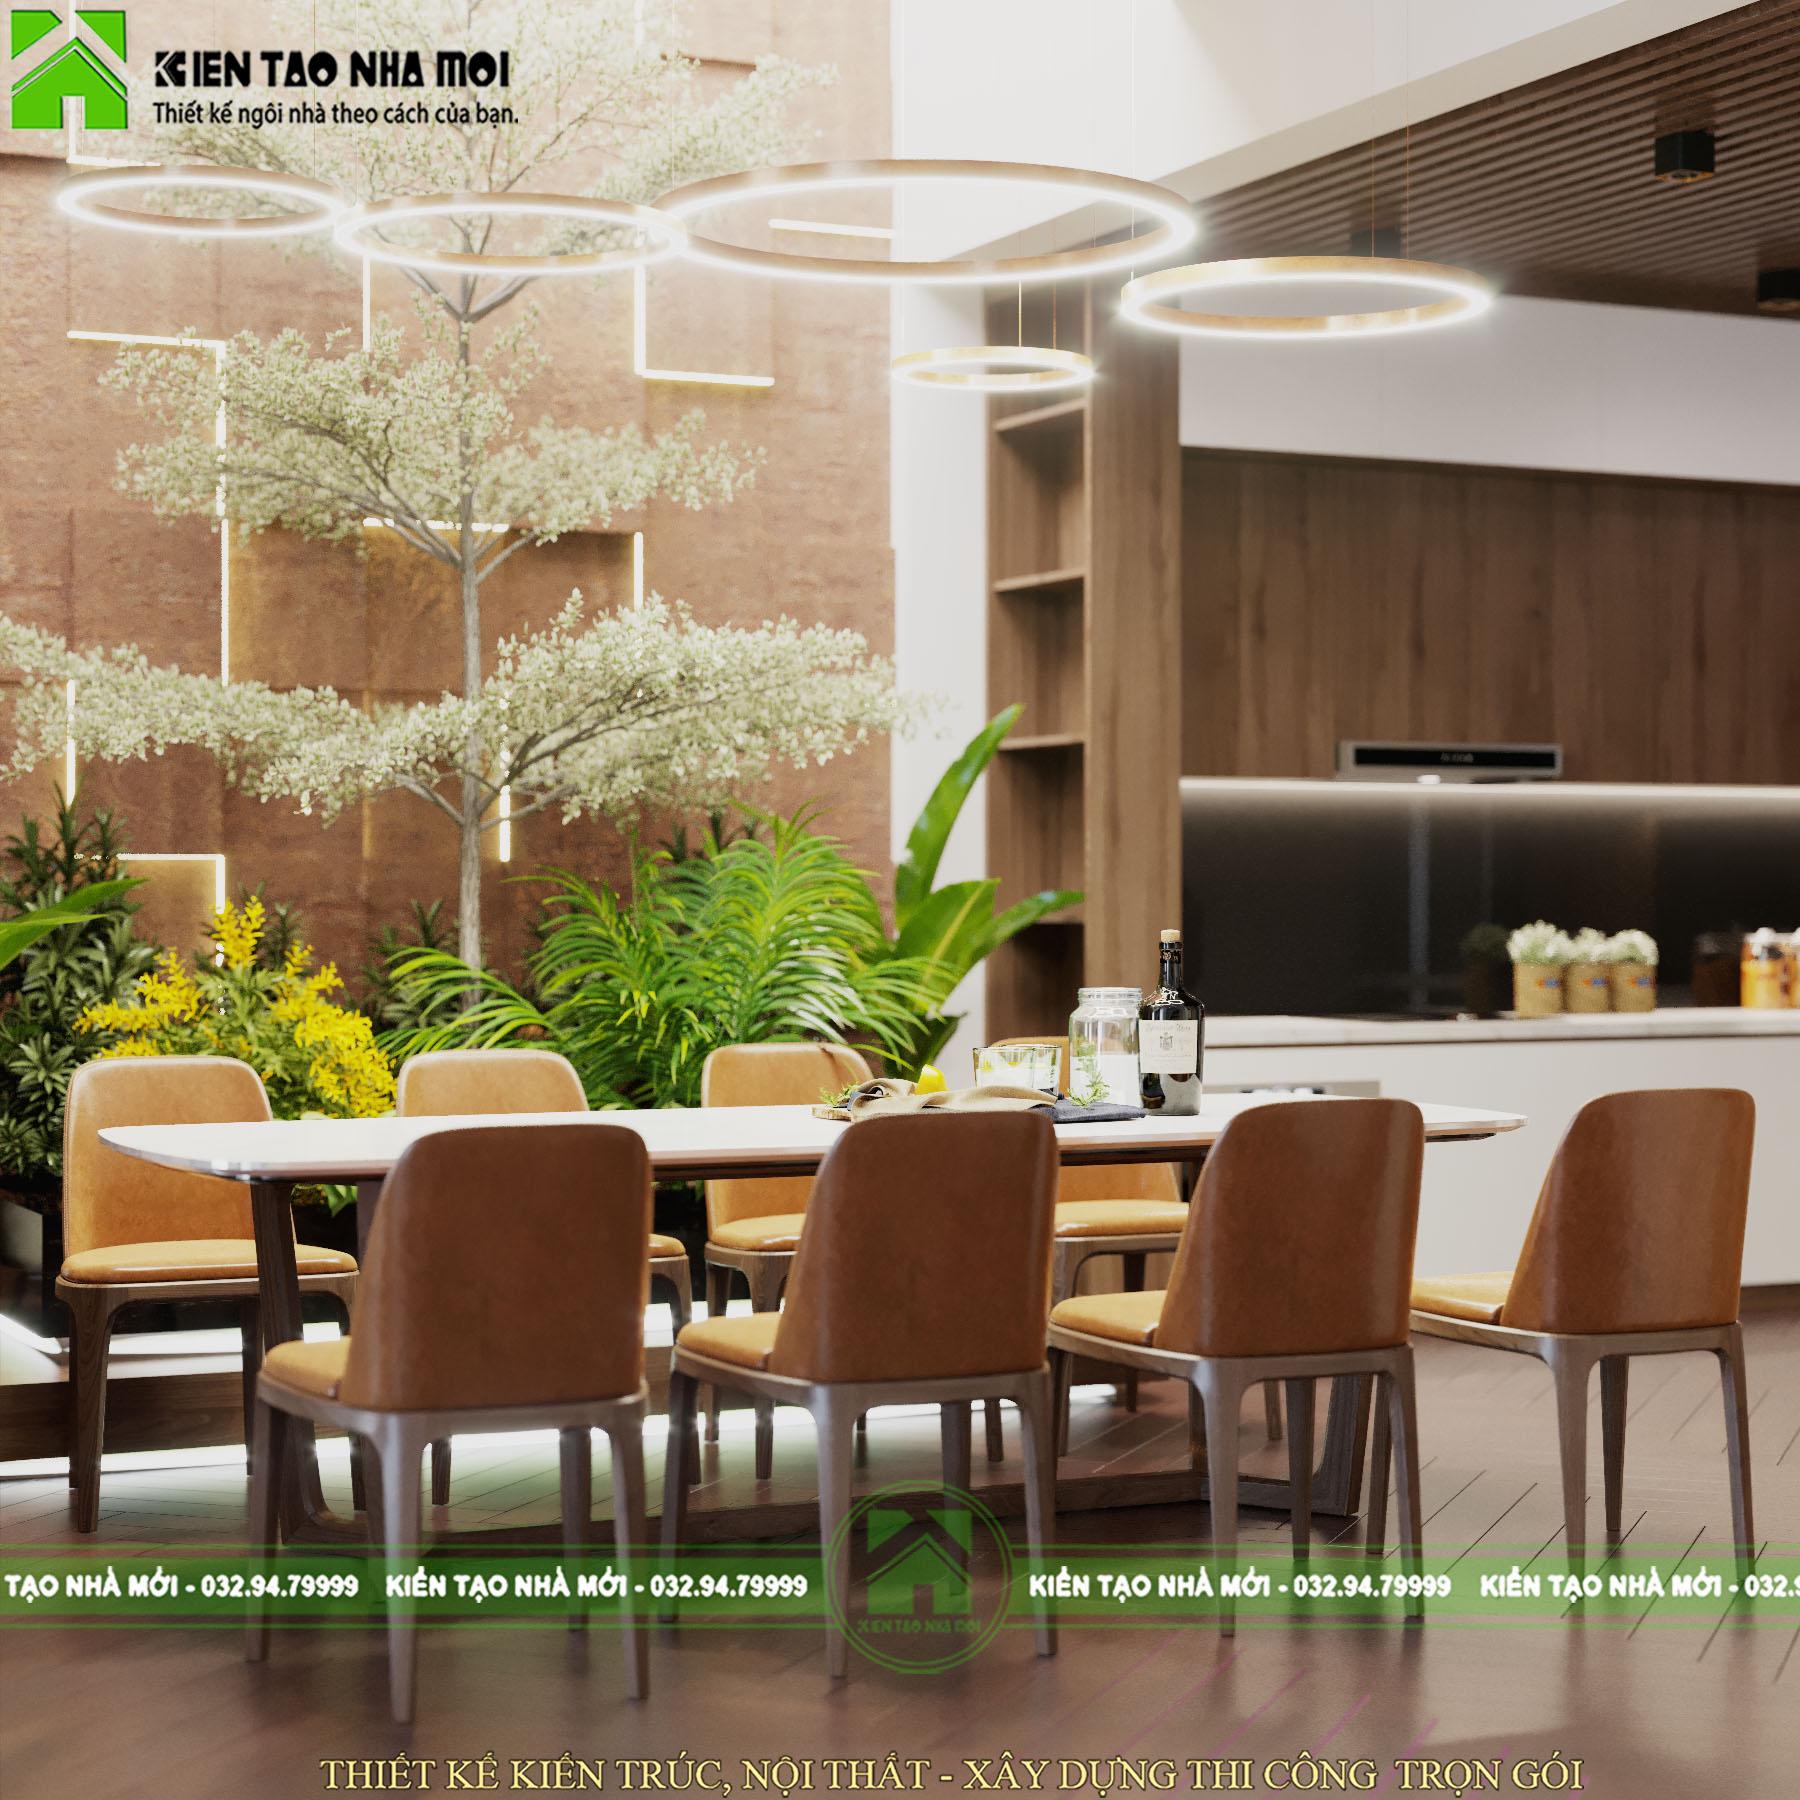 Thiết kế nội thất Biệt Thự tại Phú Thọ Thiết kế nội thất nhà ở đẹp, hiện đại tại Phú Thọ 1588576336 6